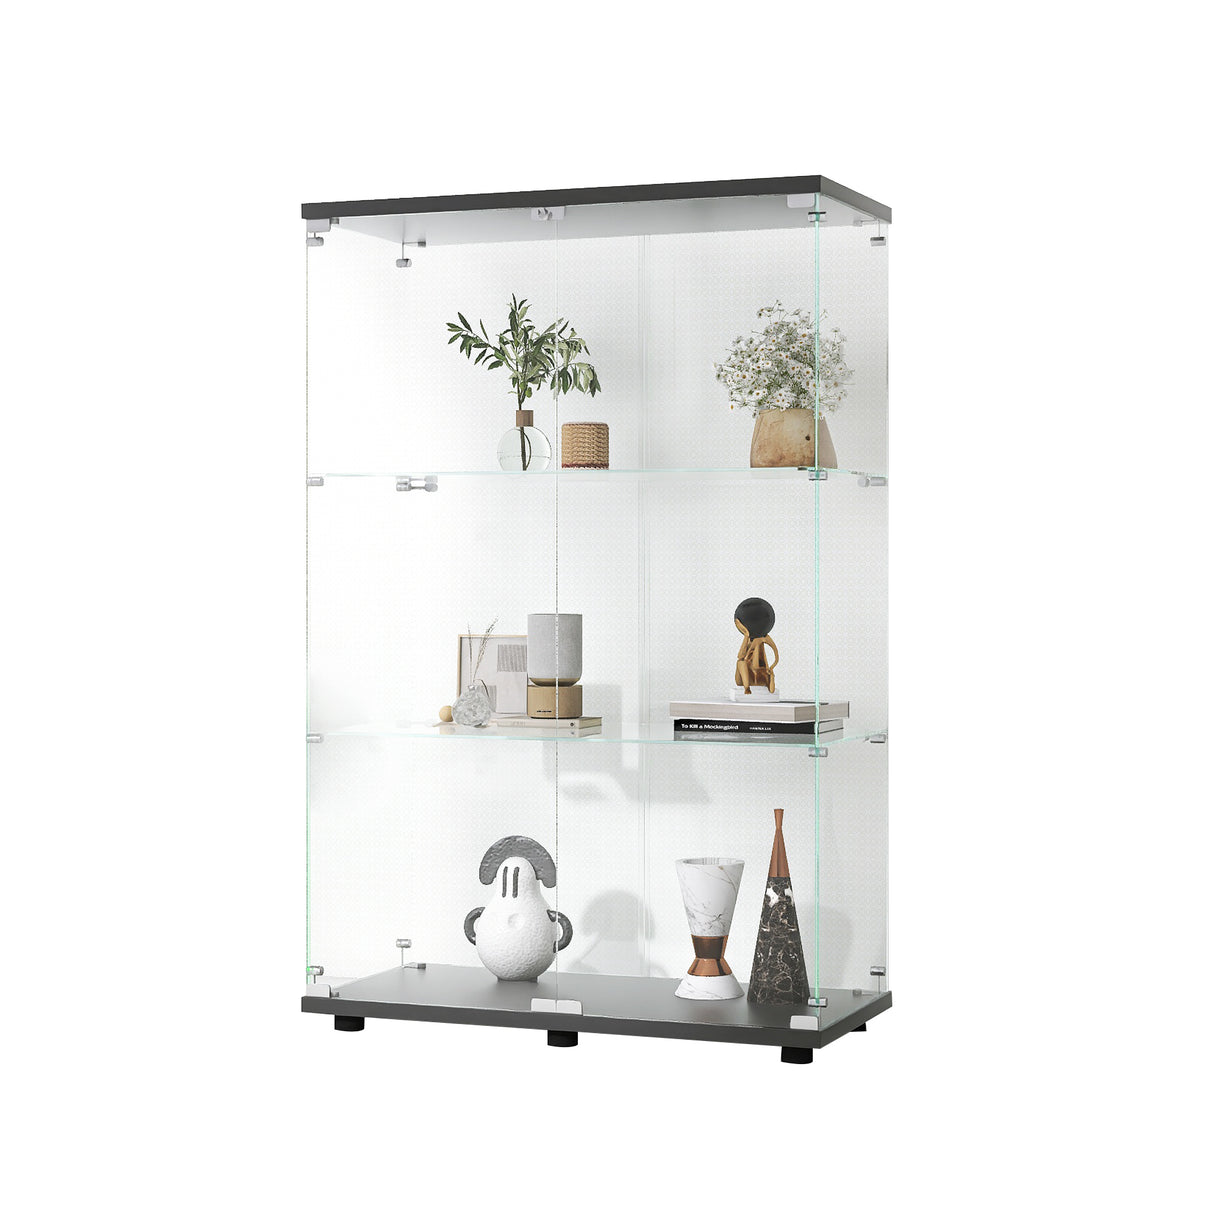 Two-door Glass Display Cabinet 3 Shelves with Door, Floor Standing Curio Bookshelf for Living Room Bedroom Office, 49.3"*31.7"*14.3",Black Home Elegance USA